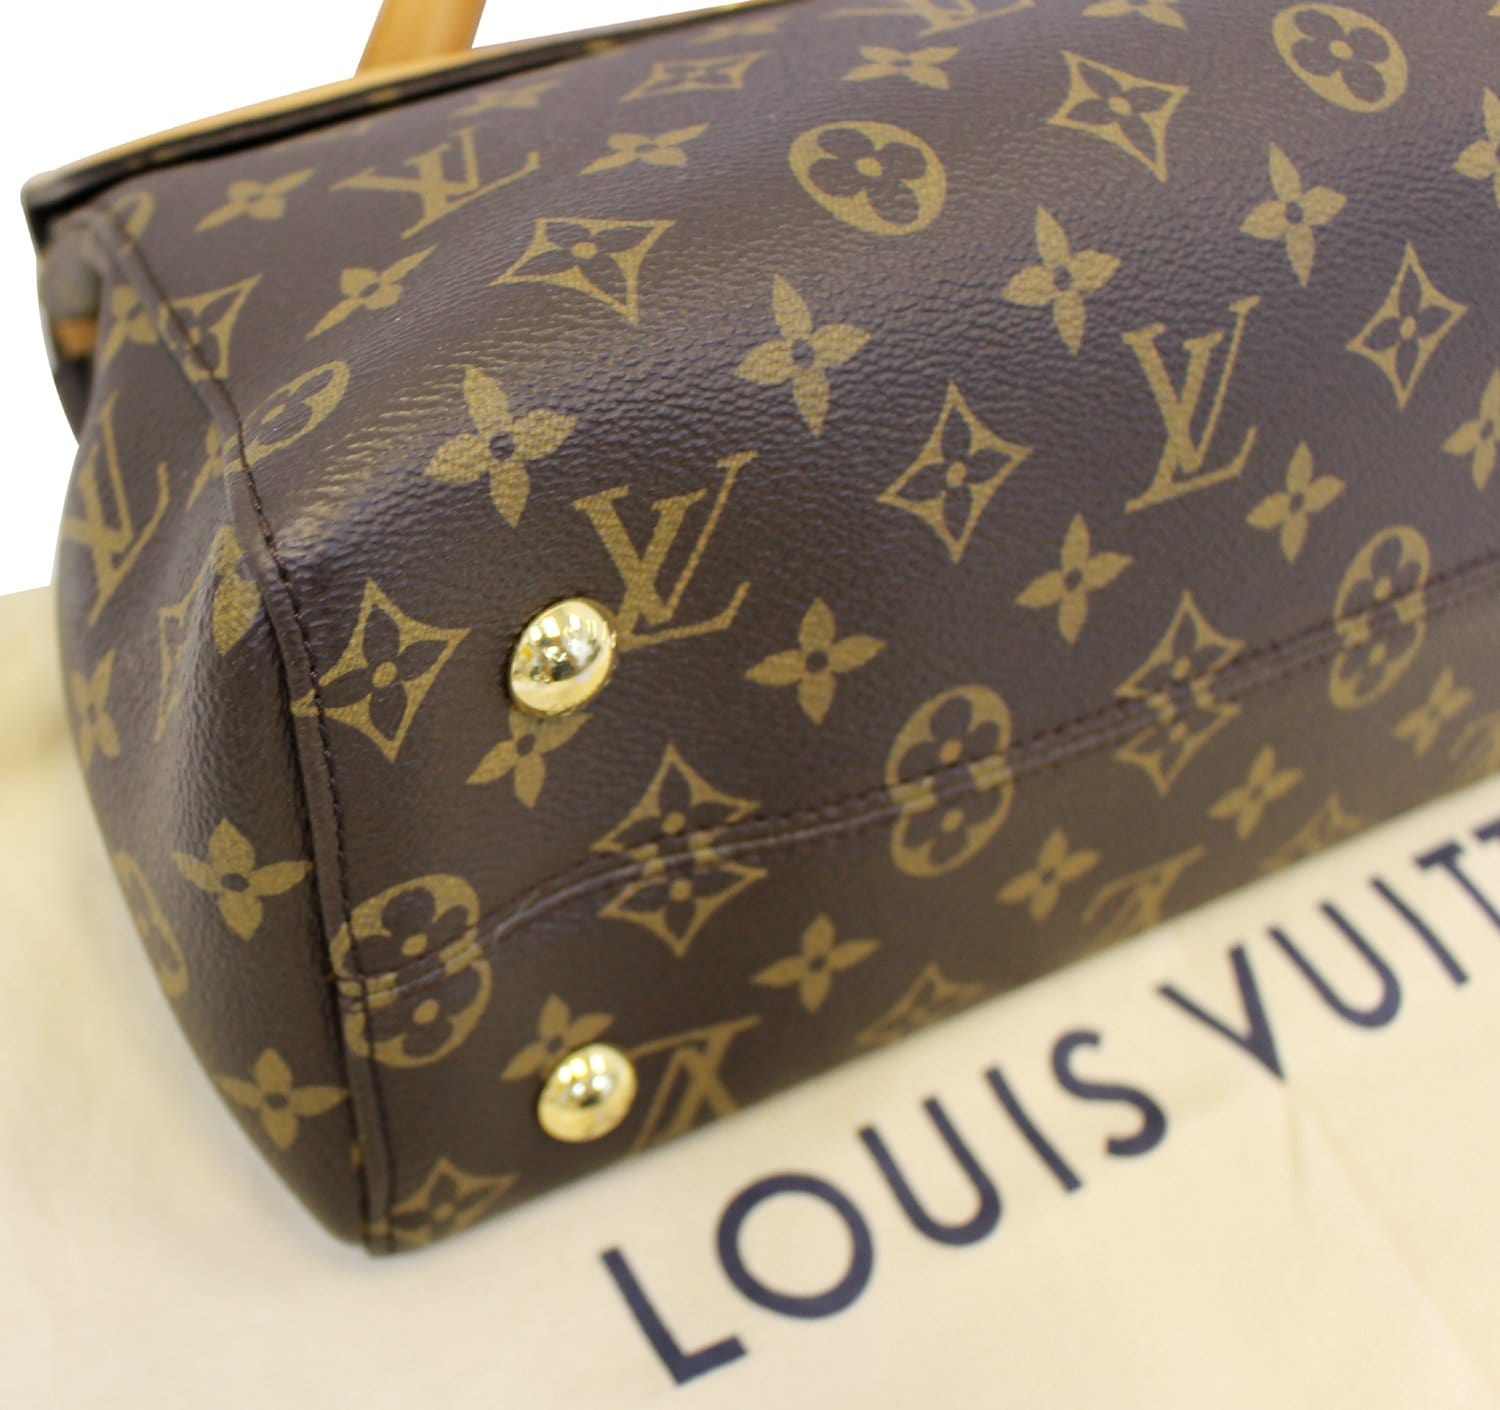 LOUIS VUITTON M41737 Monogram Venus Tote Bag 2WAY Bag Hand Bag